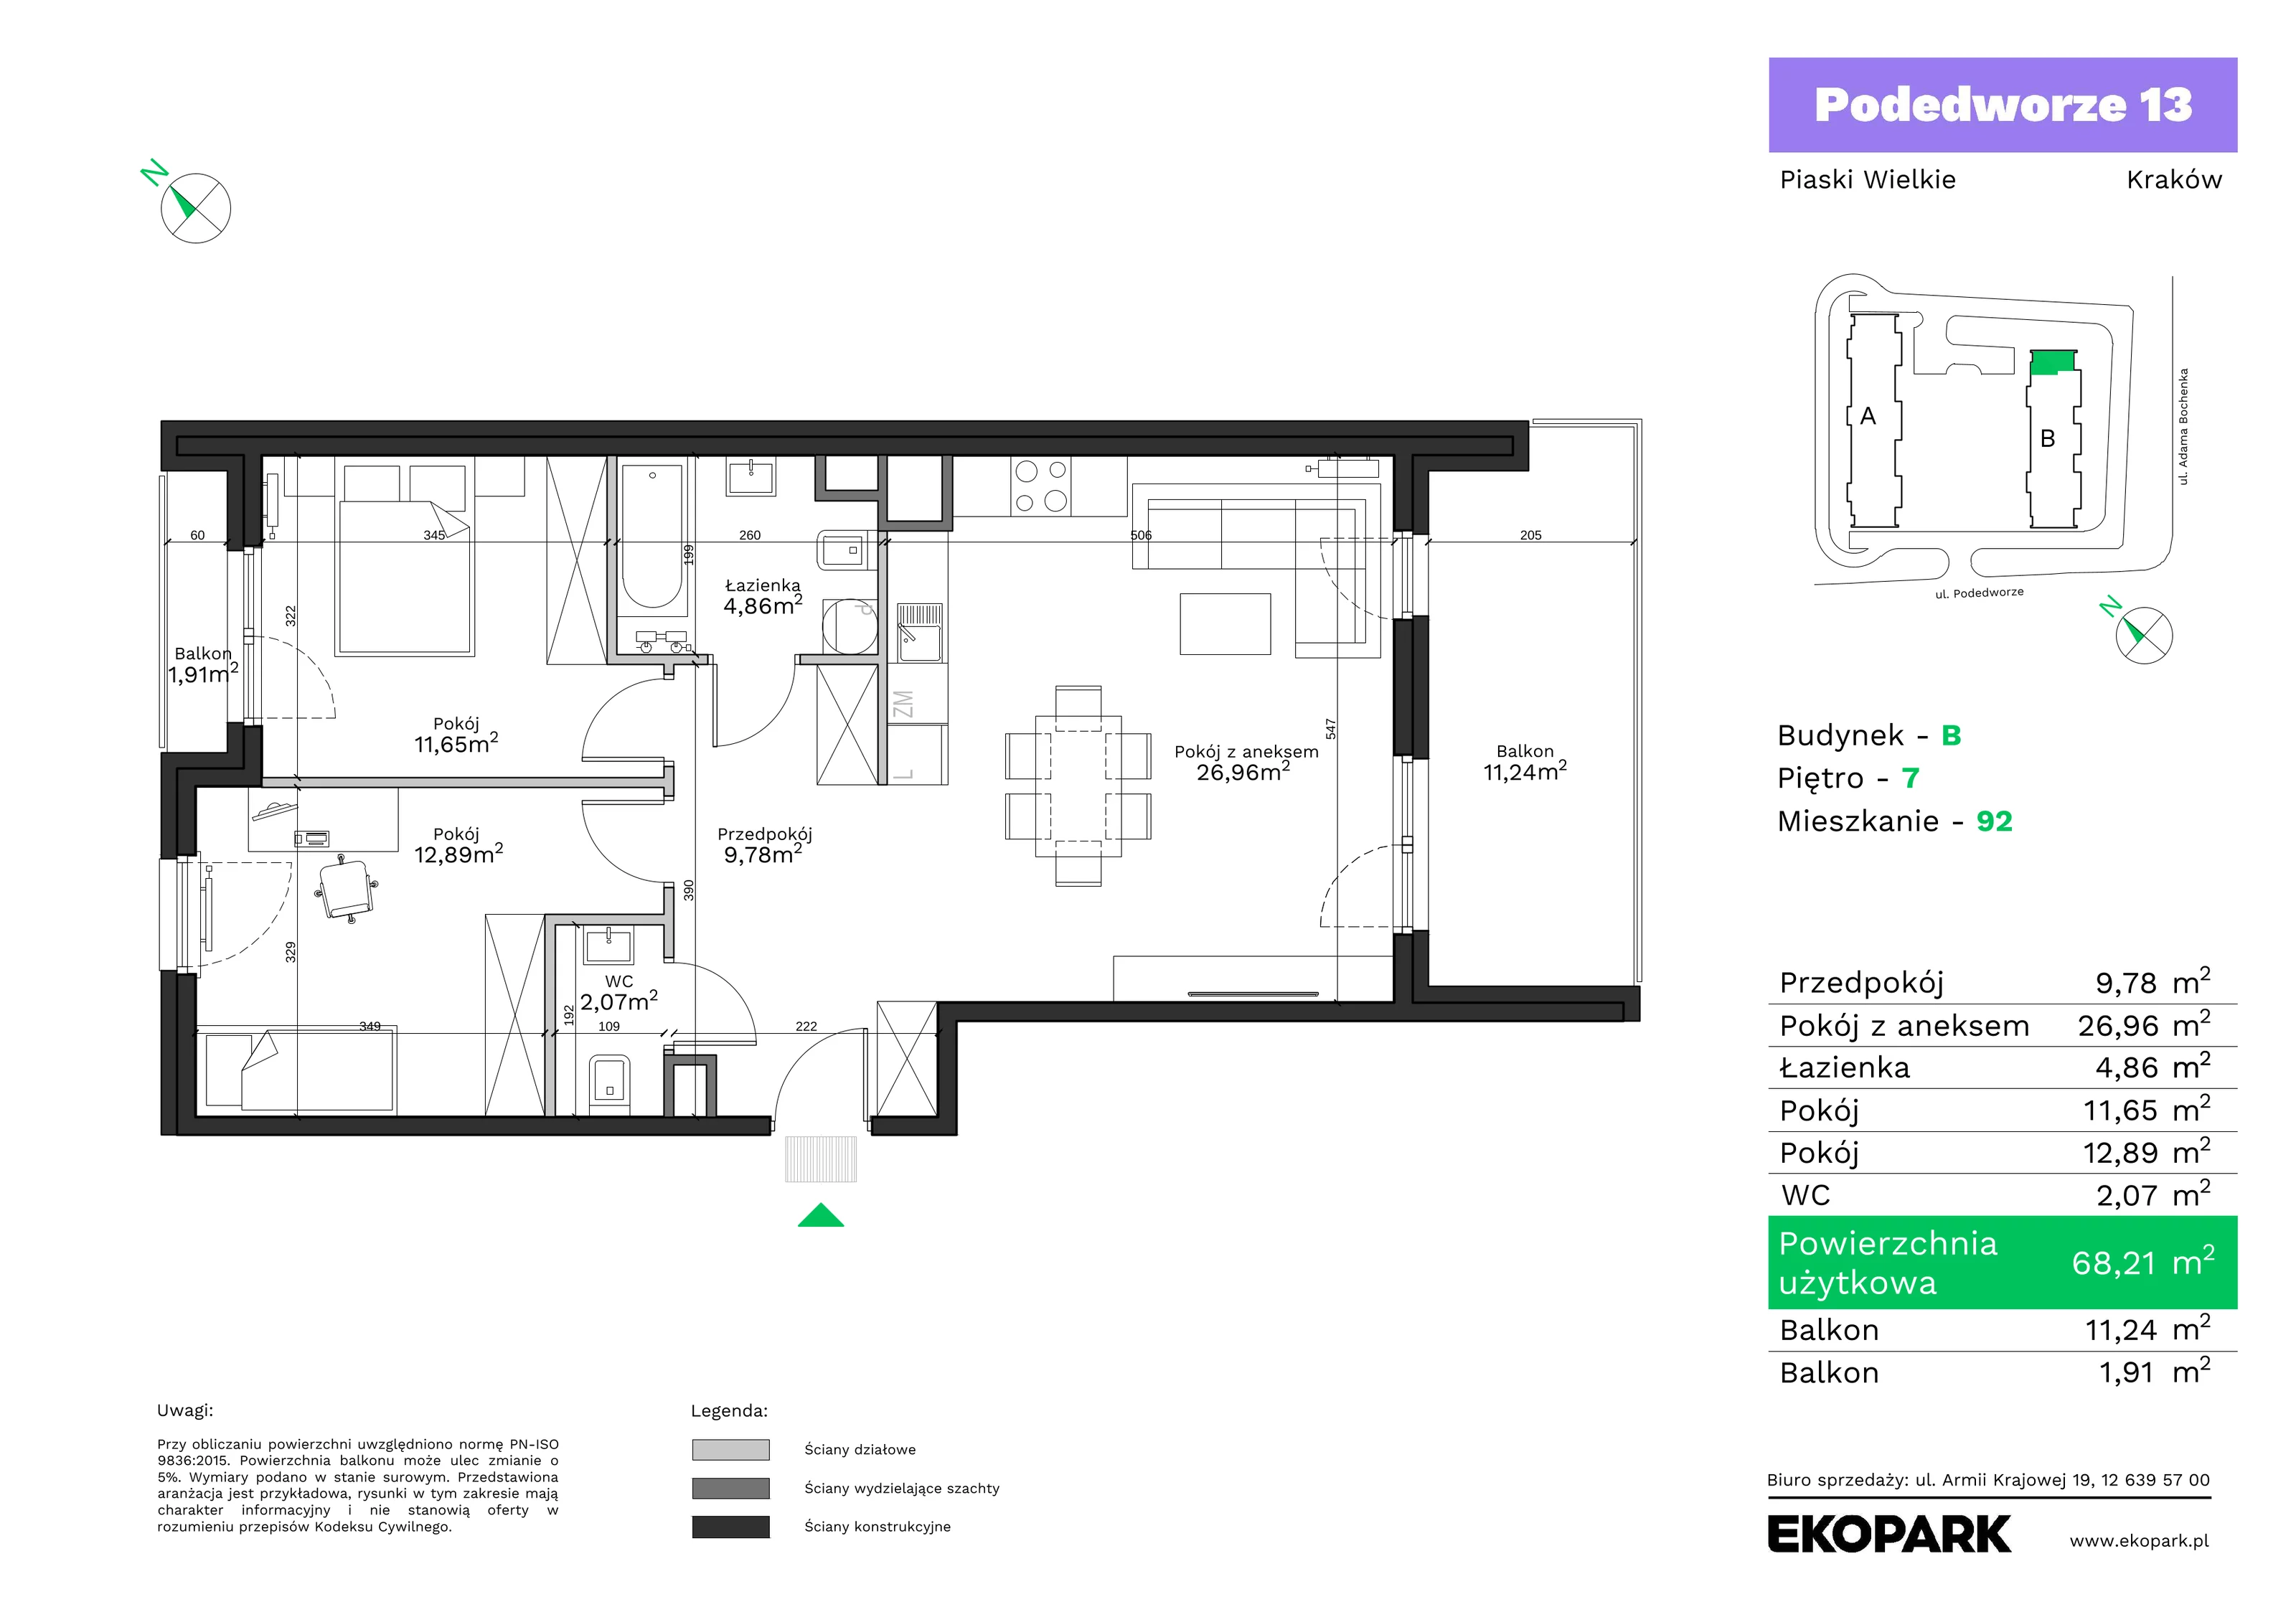 Mieszkanie 68,21 m², piętro 7, oferta nr B92, Podedworze 13, Kraków, Podgórze Duchackie, Piaski Wielkie, ul. Podedworze 13